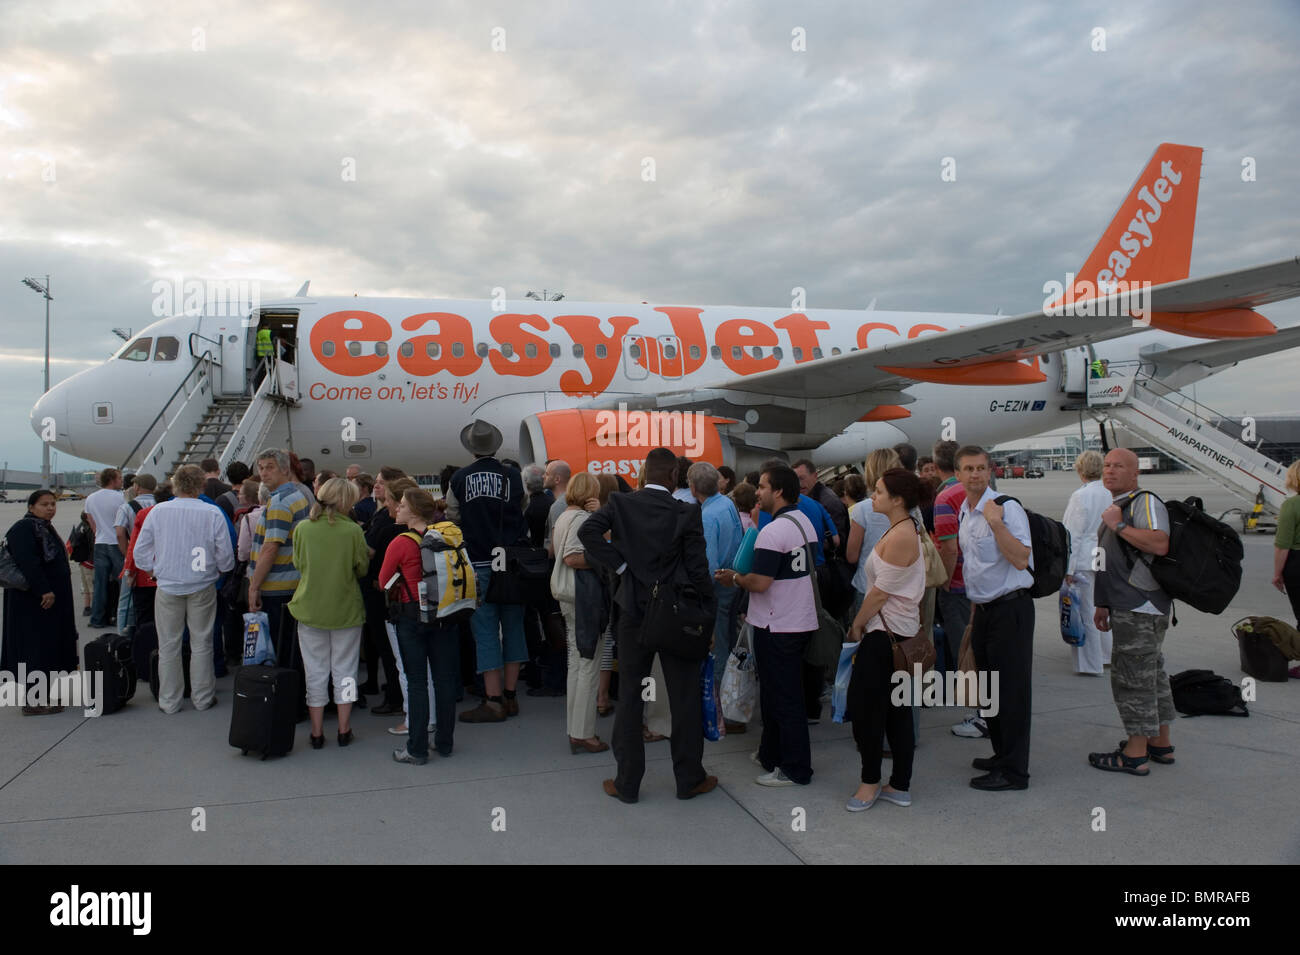 Les passagers de monter à bord d'un avion de la compagnie aérienne Easyjet d'escompte à l'aéroport de Munich, Allemagne Banque D'Images